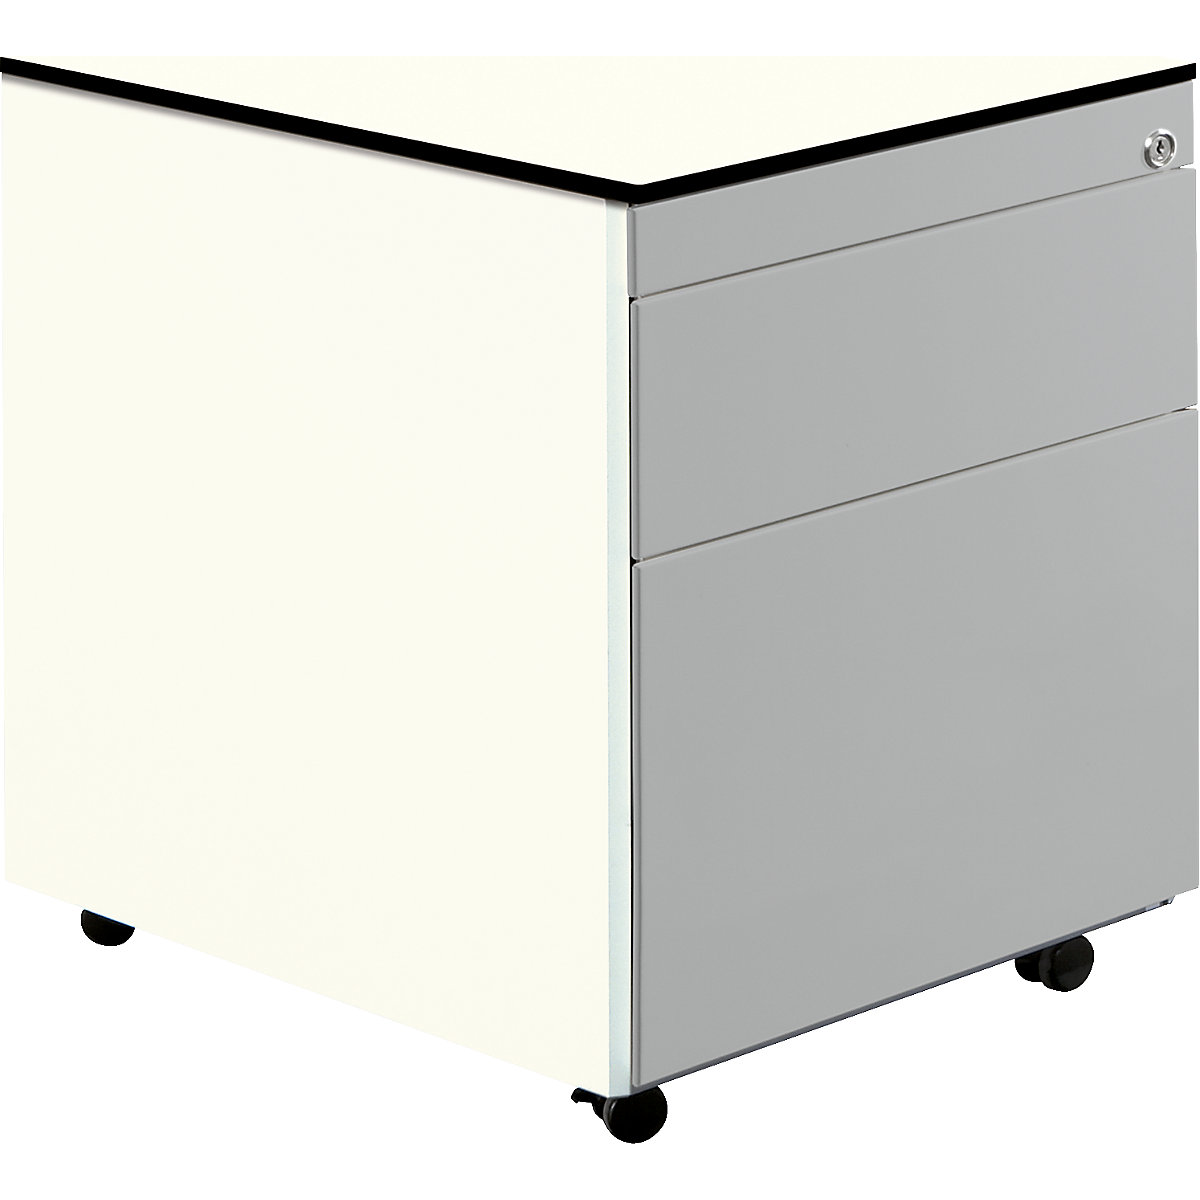 Zásuvkový kontejner s koly – mauser, v x h 573 x 600 mm, 1 zásuvka na materiál, 1 kartotéka pro závěsné složky, čistá bílá / bílý hliník / bílá-3